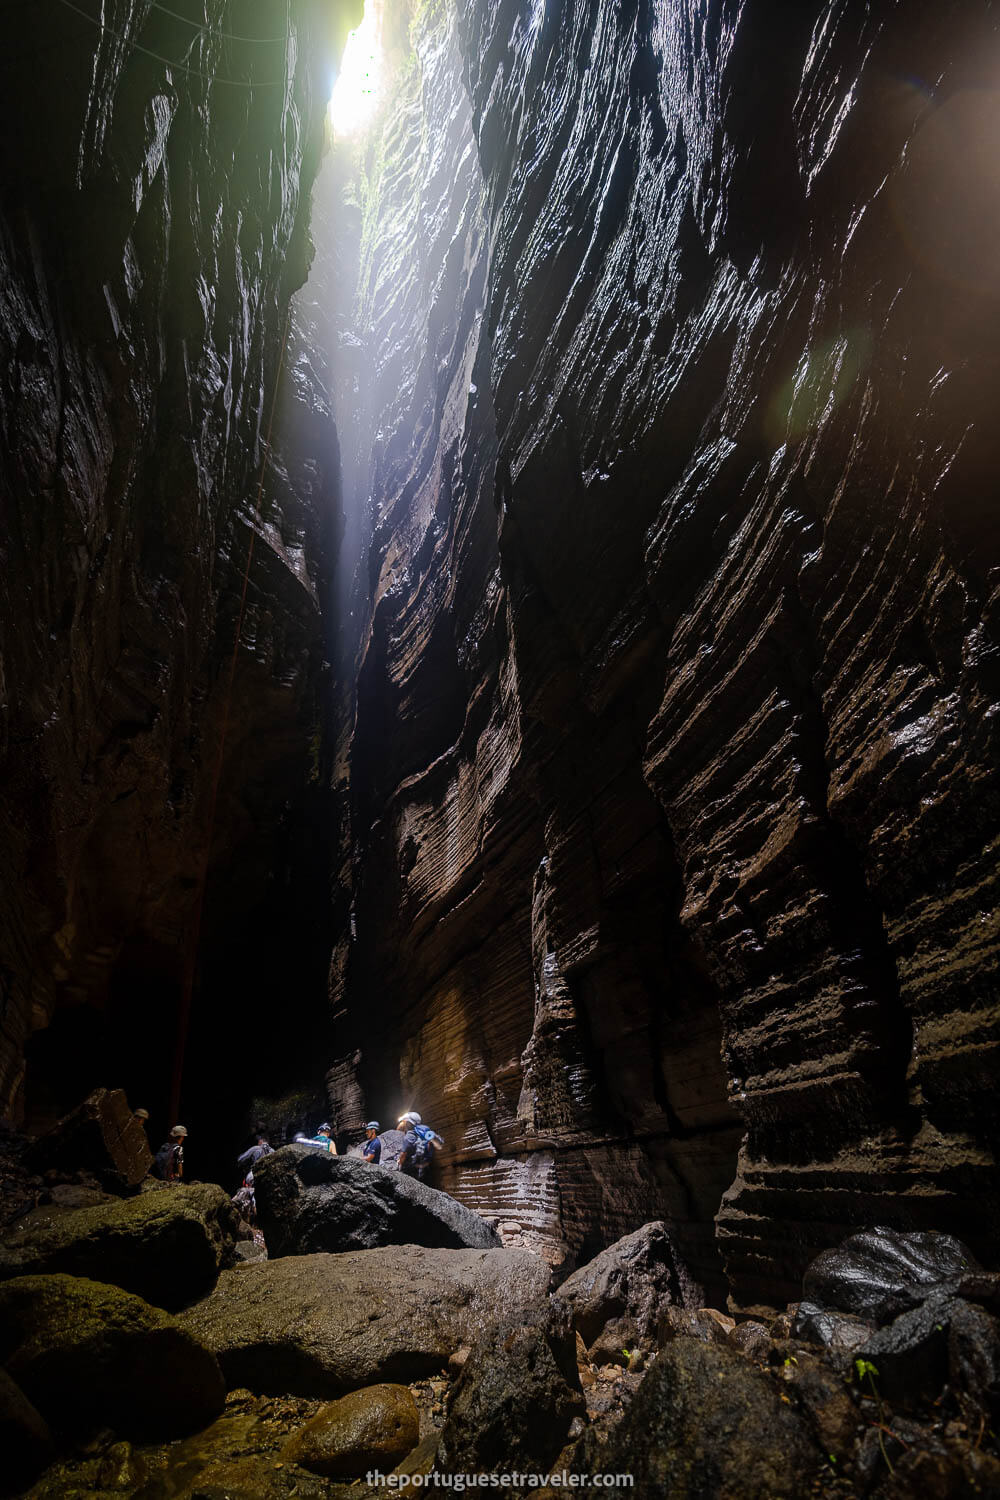 The entrance vault, on the Cueva de Los Tayos expedition.